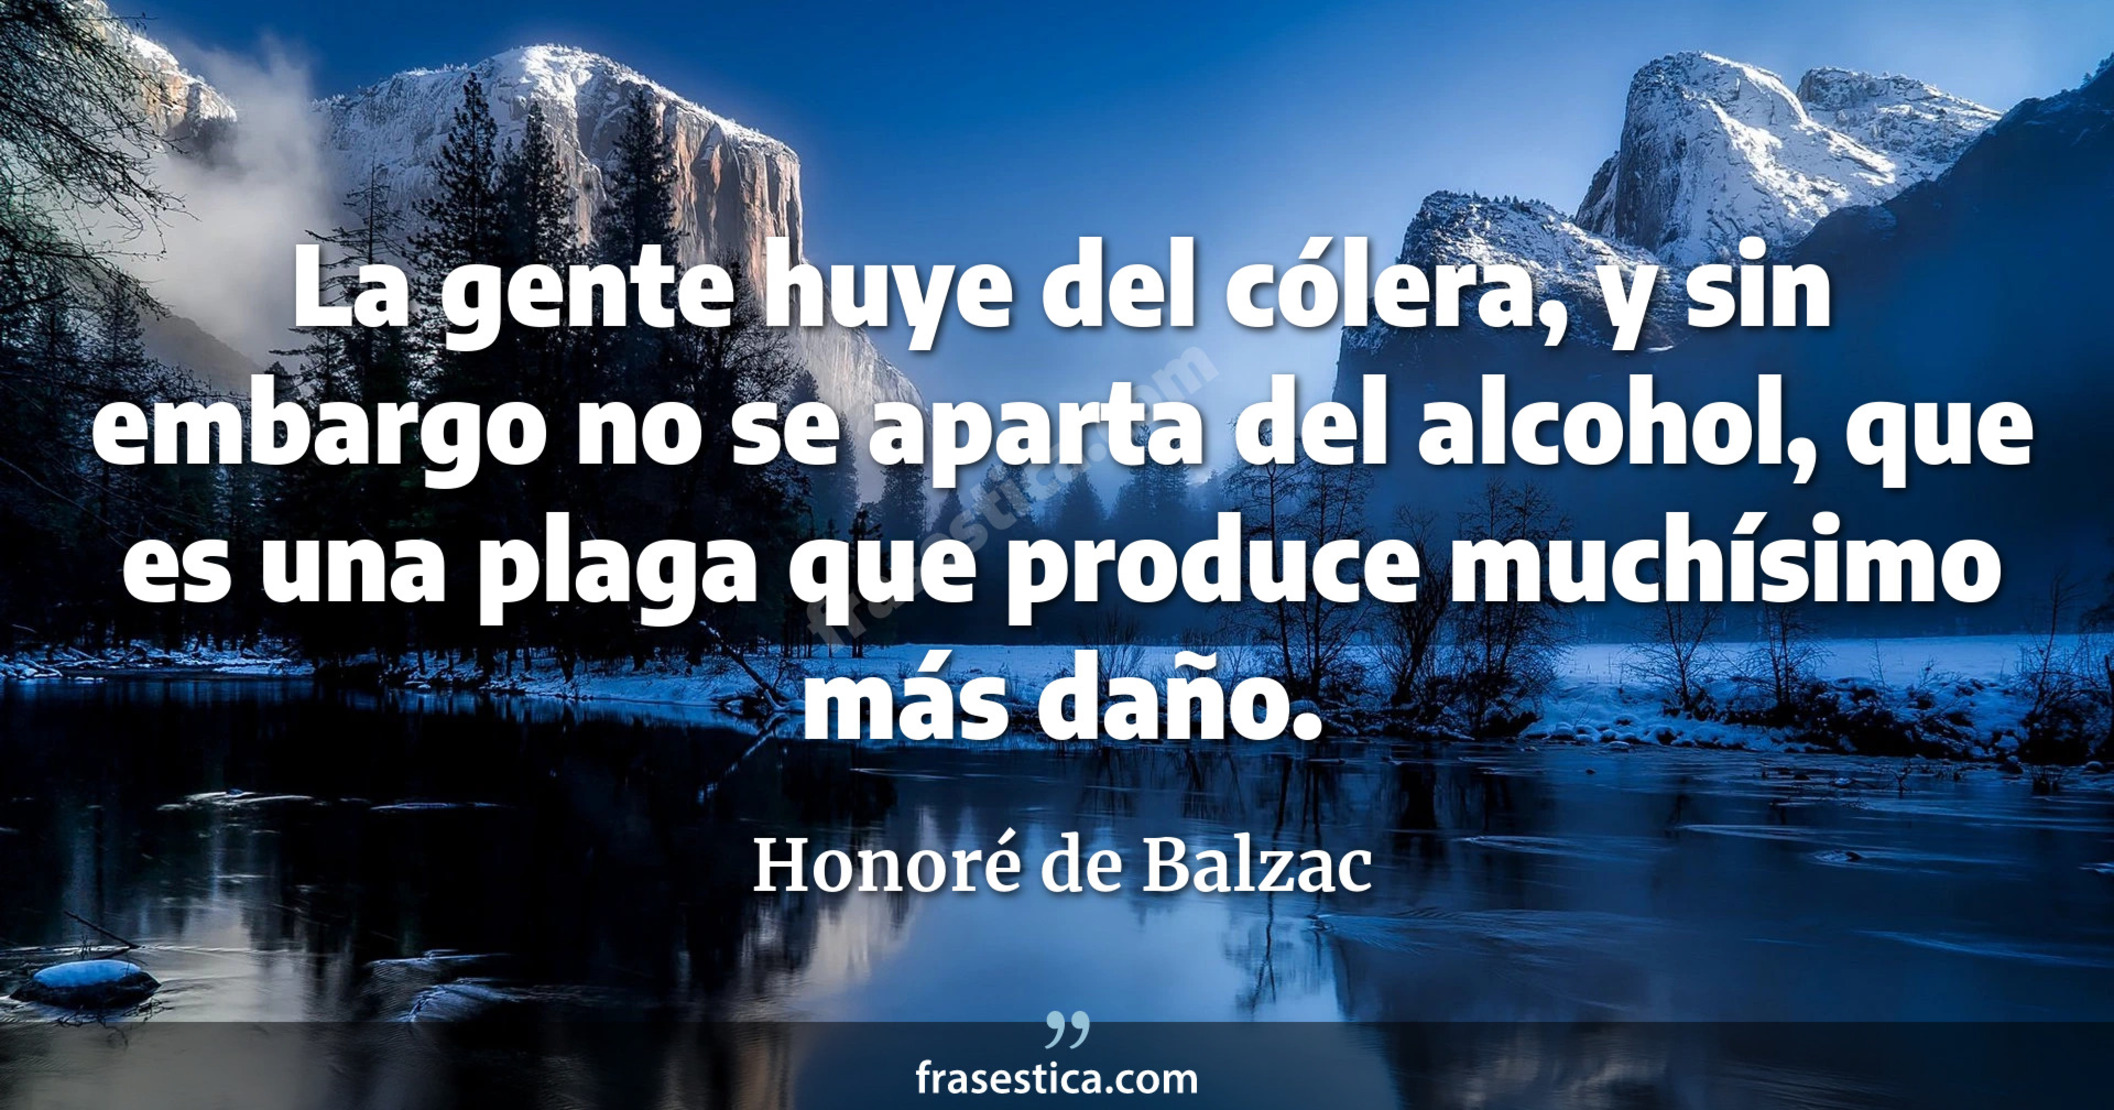 La gente huye del cólera, y sin embargo no se aparta del alcohol, que es una plaga que produce muchísimo más daño. - Honoré de Balzac